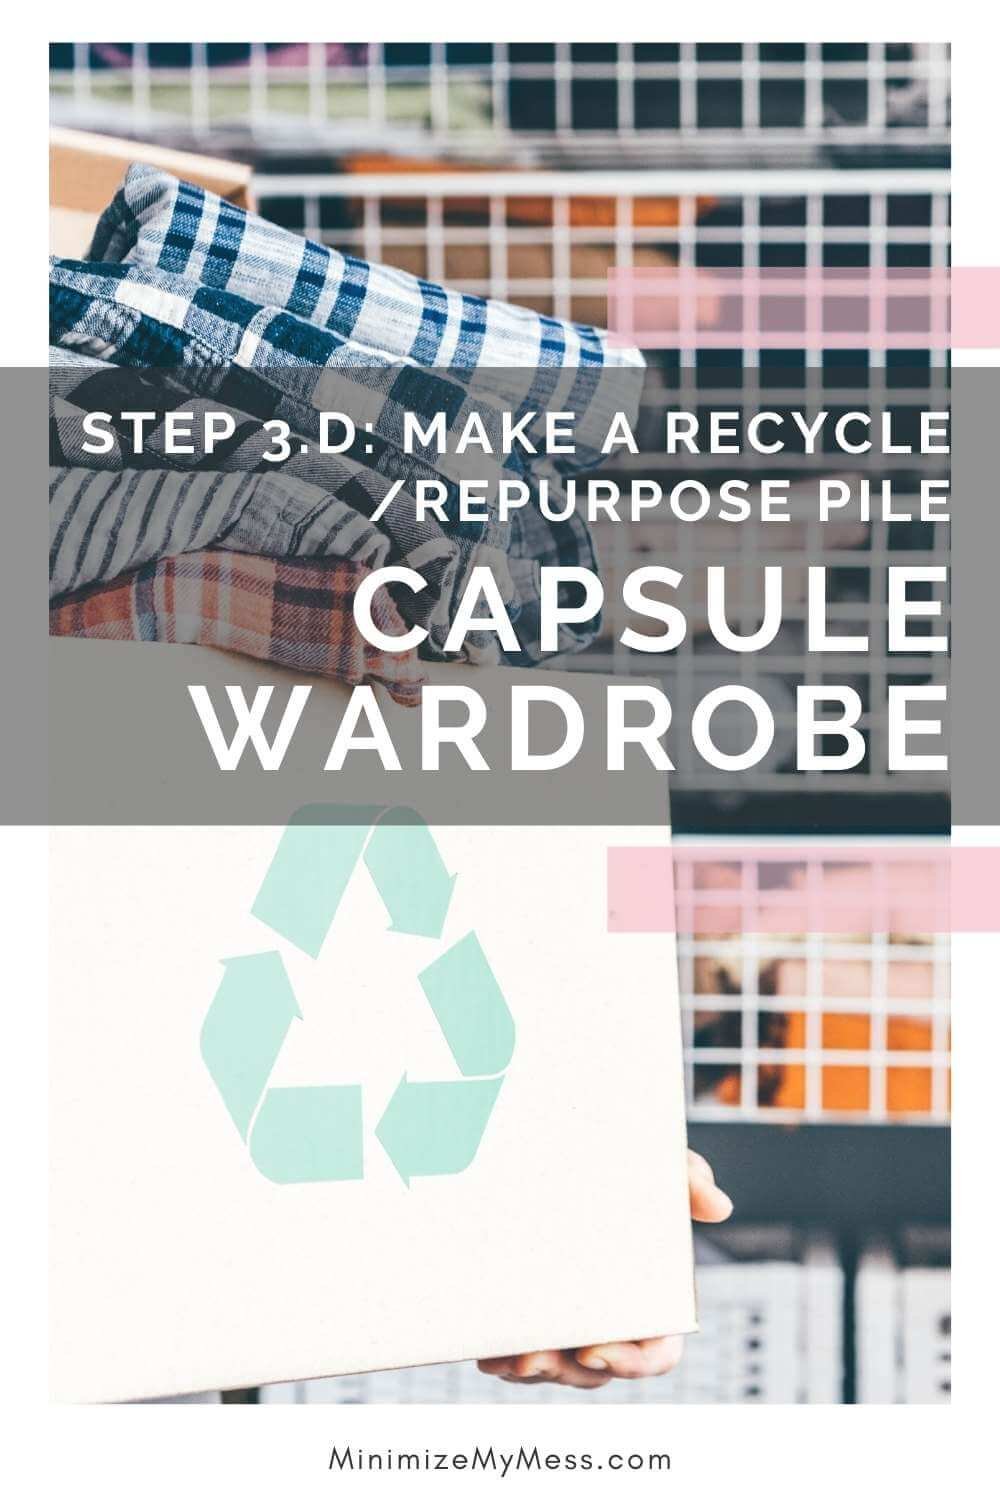 Capsule Wardrobe Checklist — VANITY STORIES